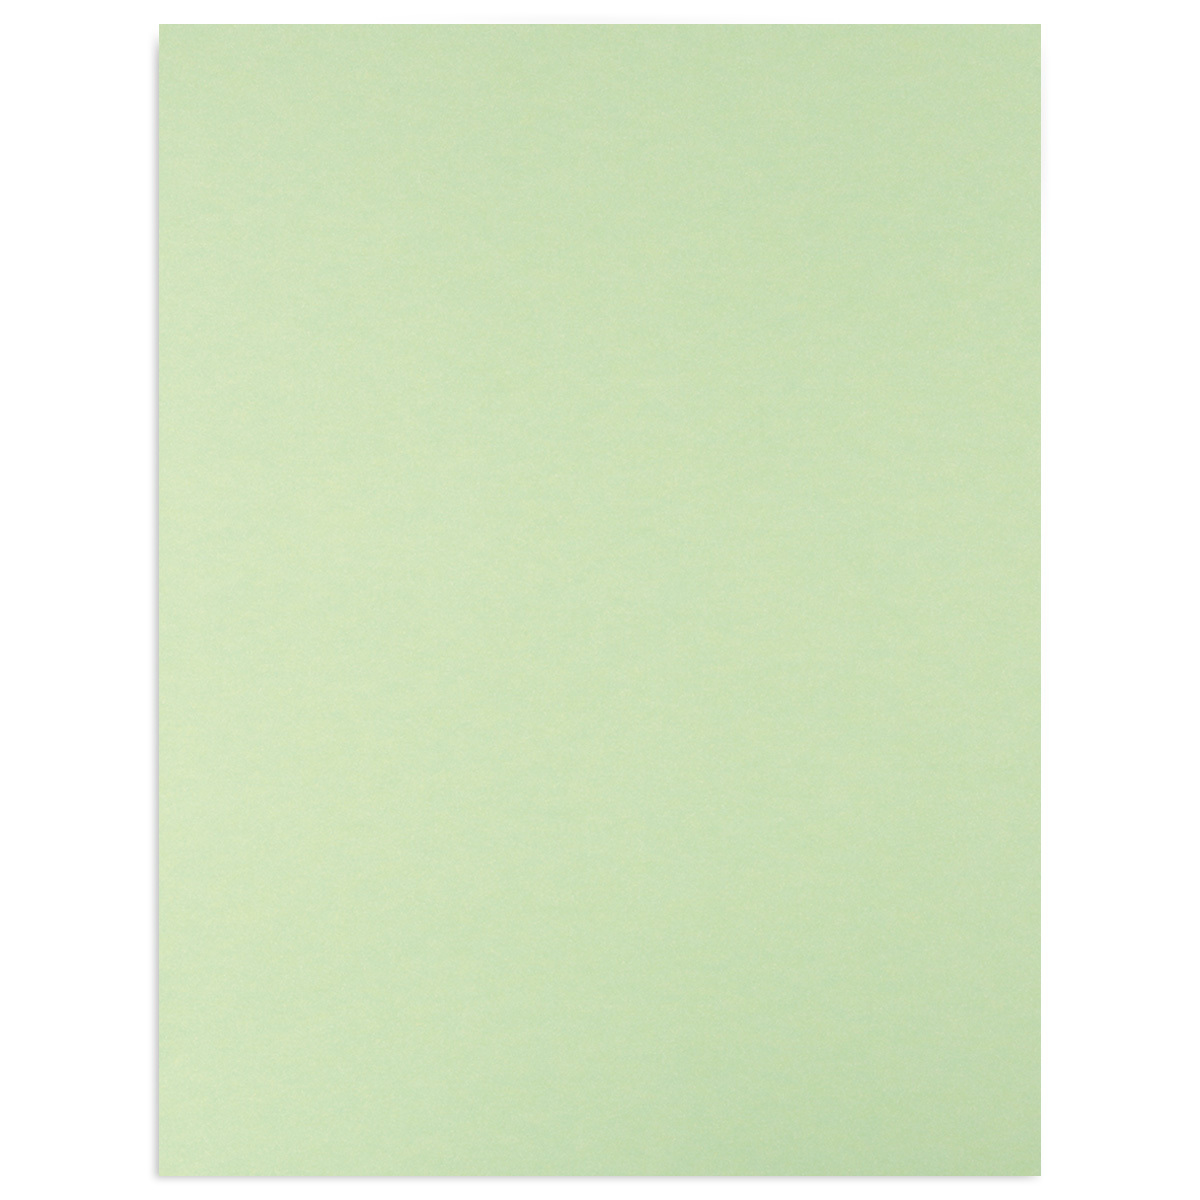 Cartulina de Colores Royal Cast / 1 pieza / Carta / Verde pastel / 170 gr